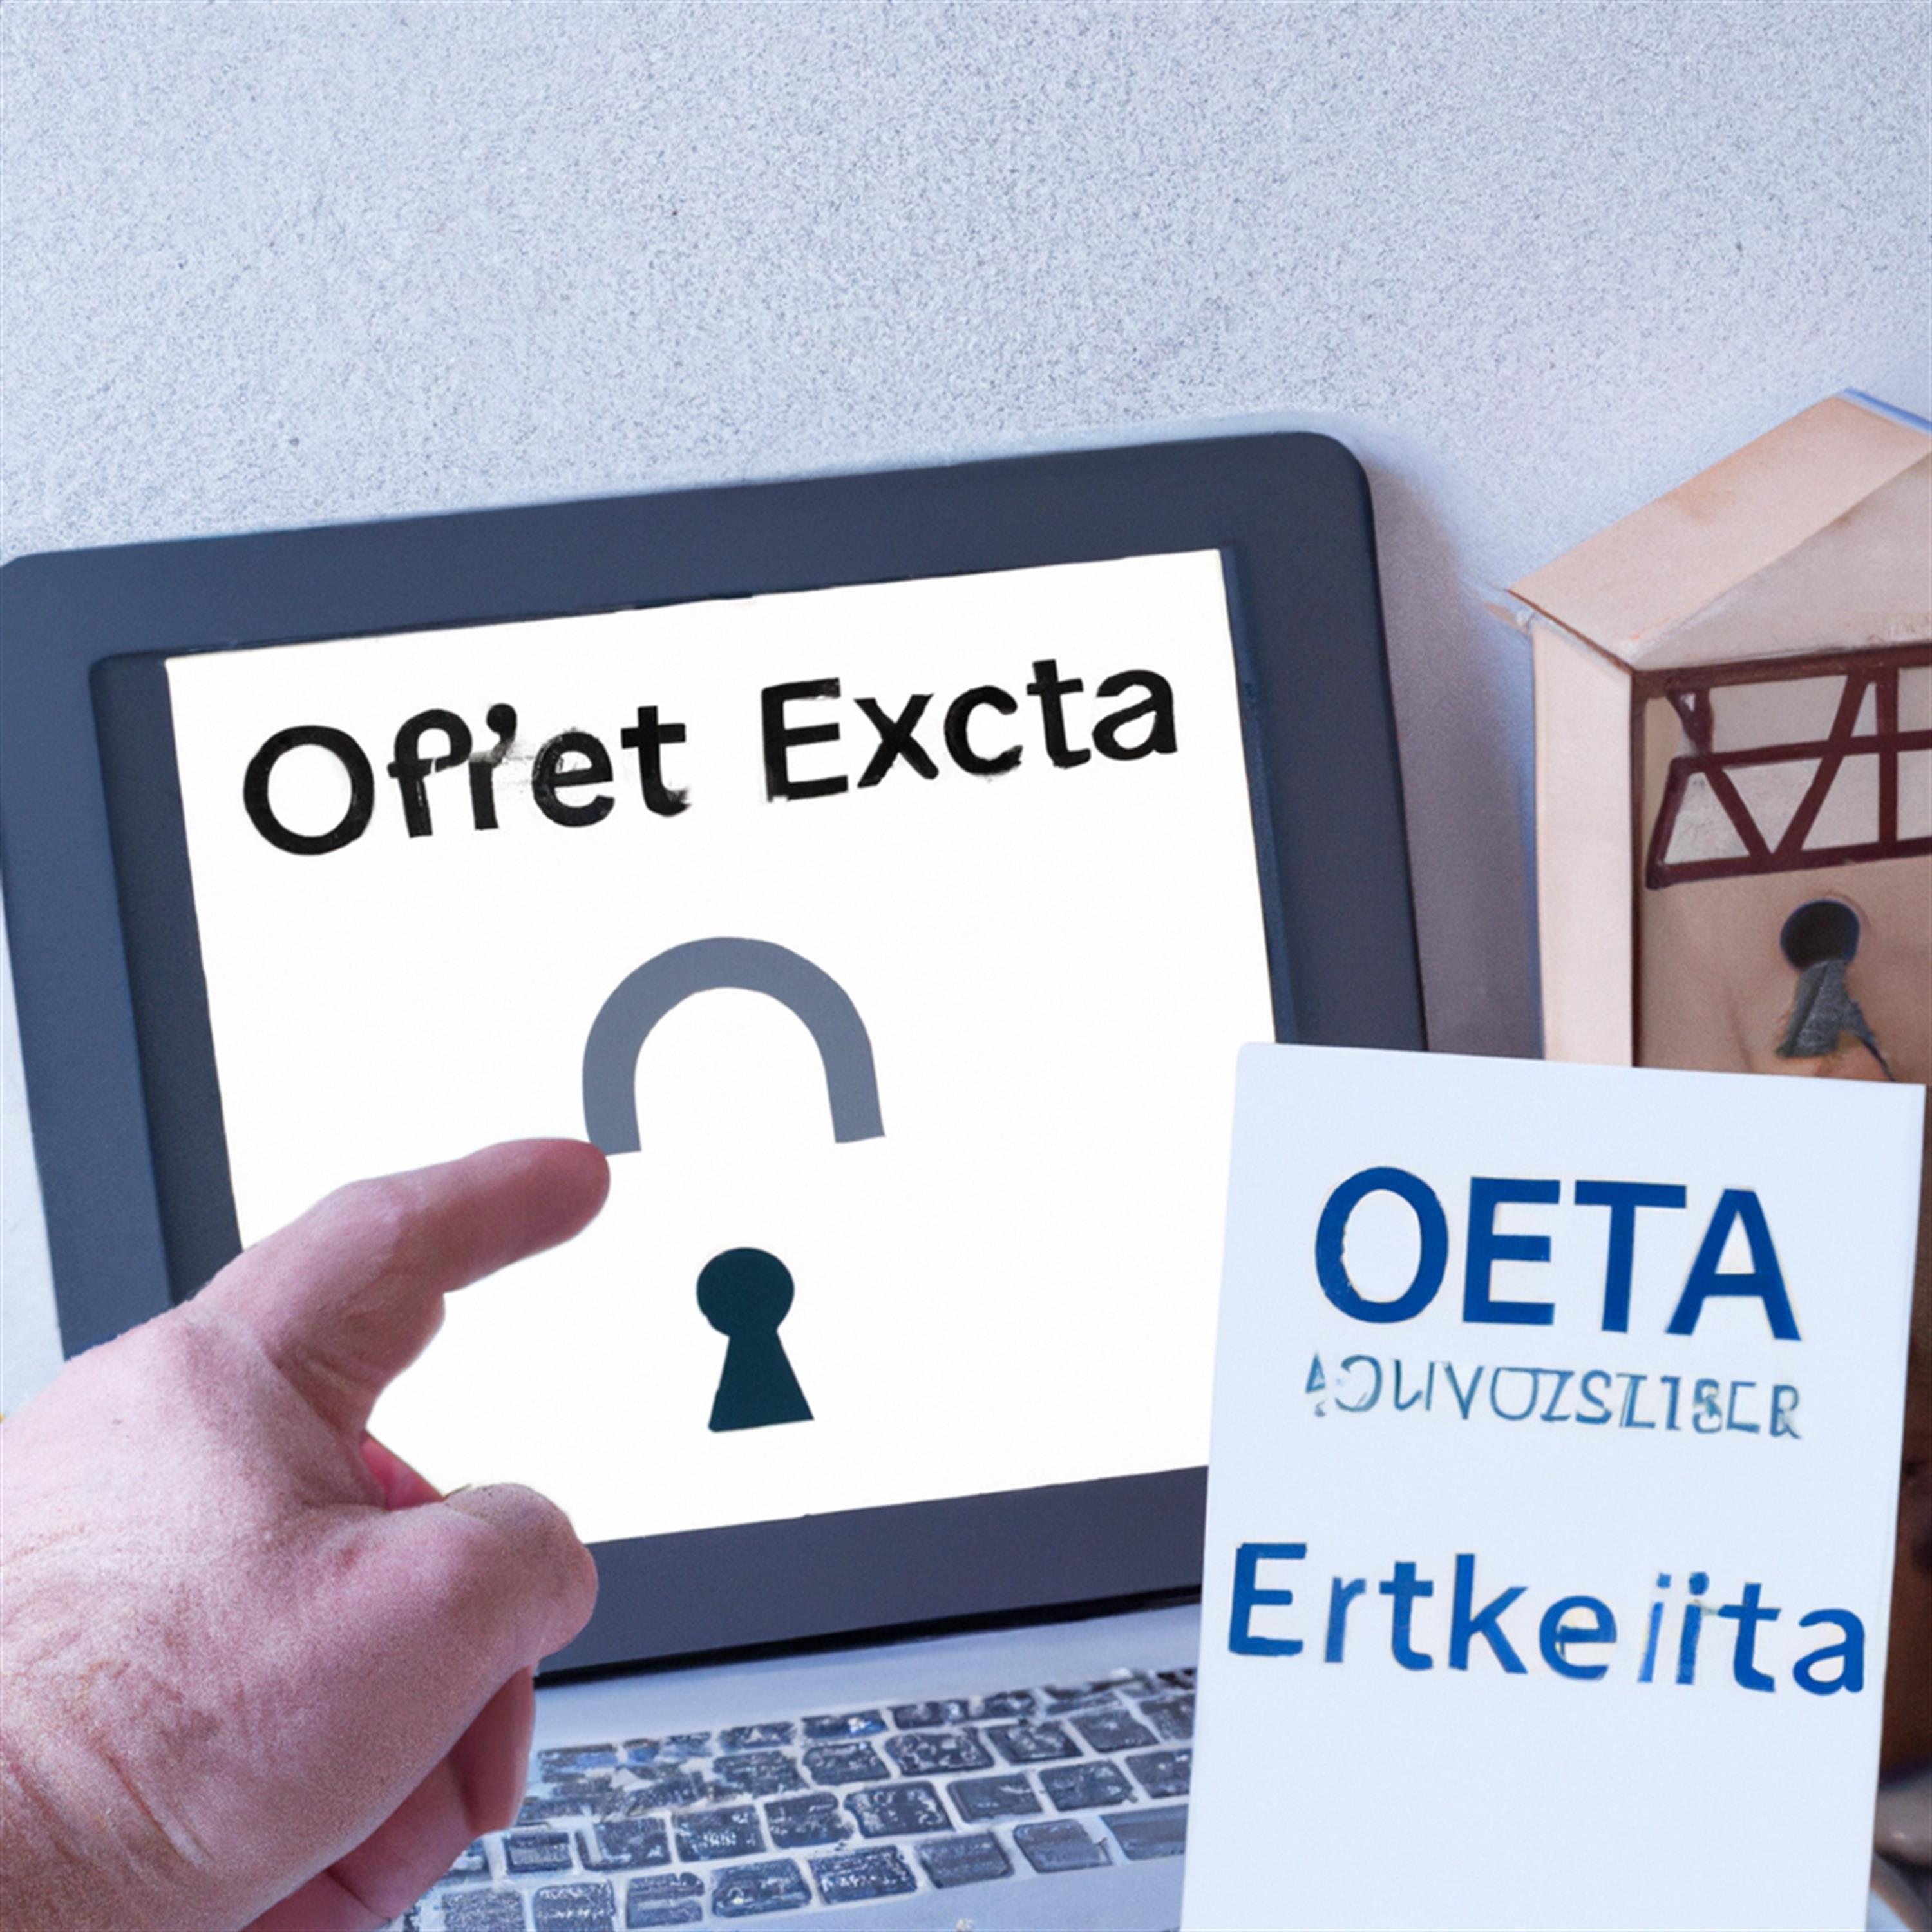 Okta warnt vor steigenden Credential-Stuffing-Angriffen durch Residential Proxies